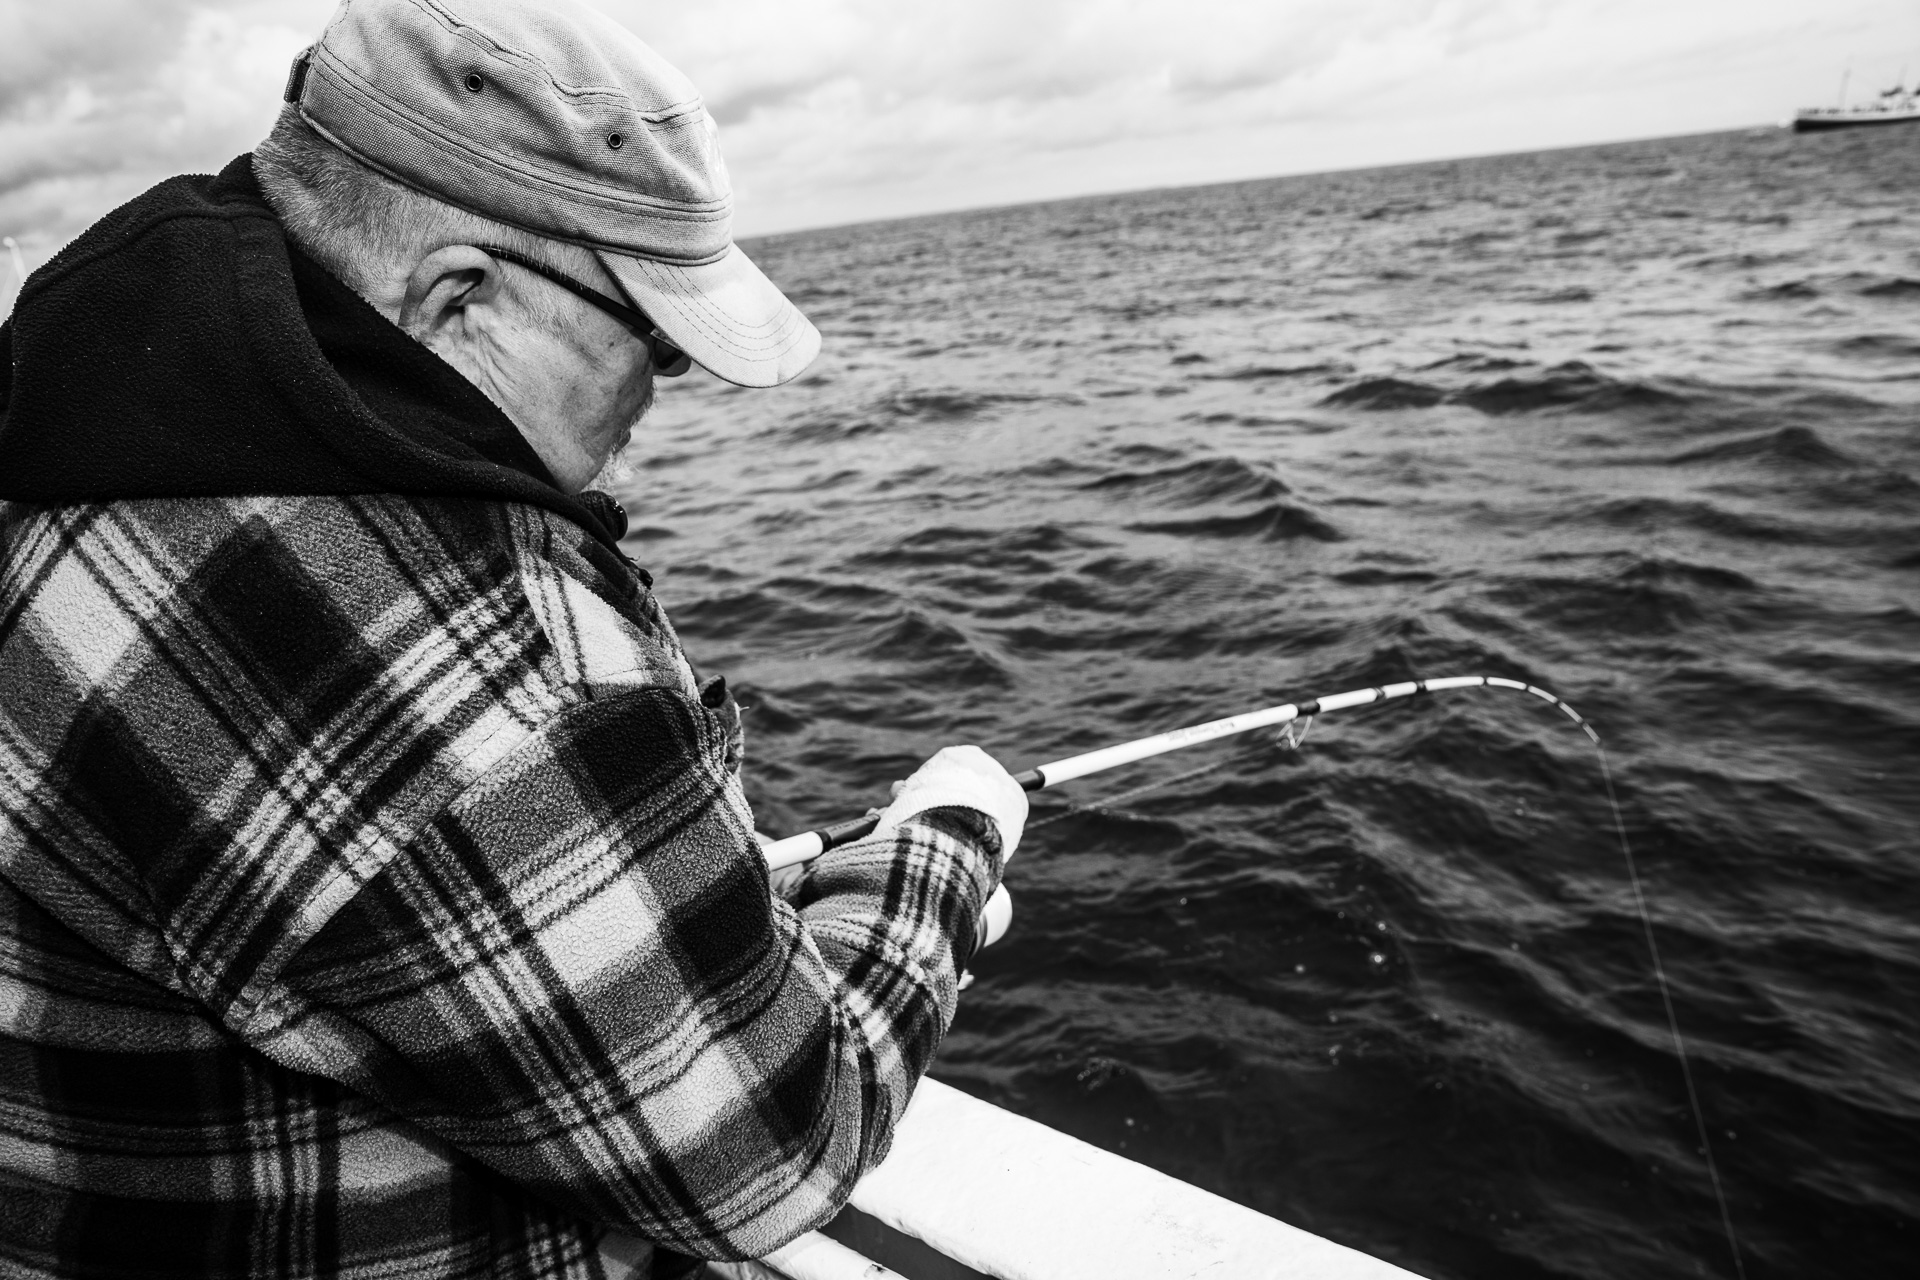 Angler dürfen ab dem 1. Januar 2024 in der Ostsee (SD 22-26) keine Dorsche mehr fangen.